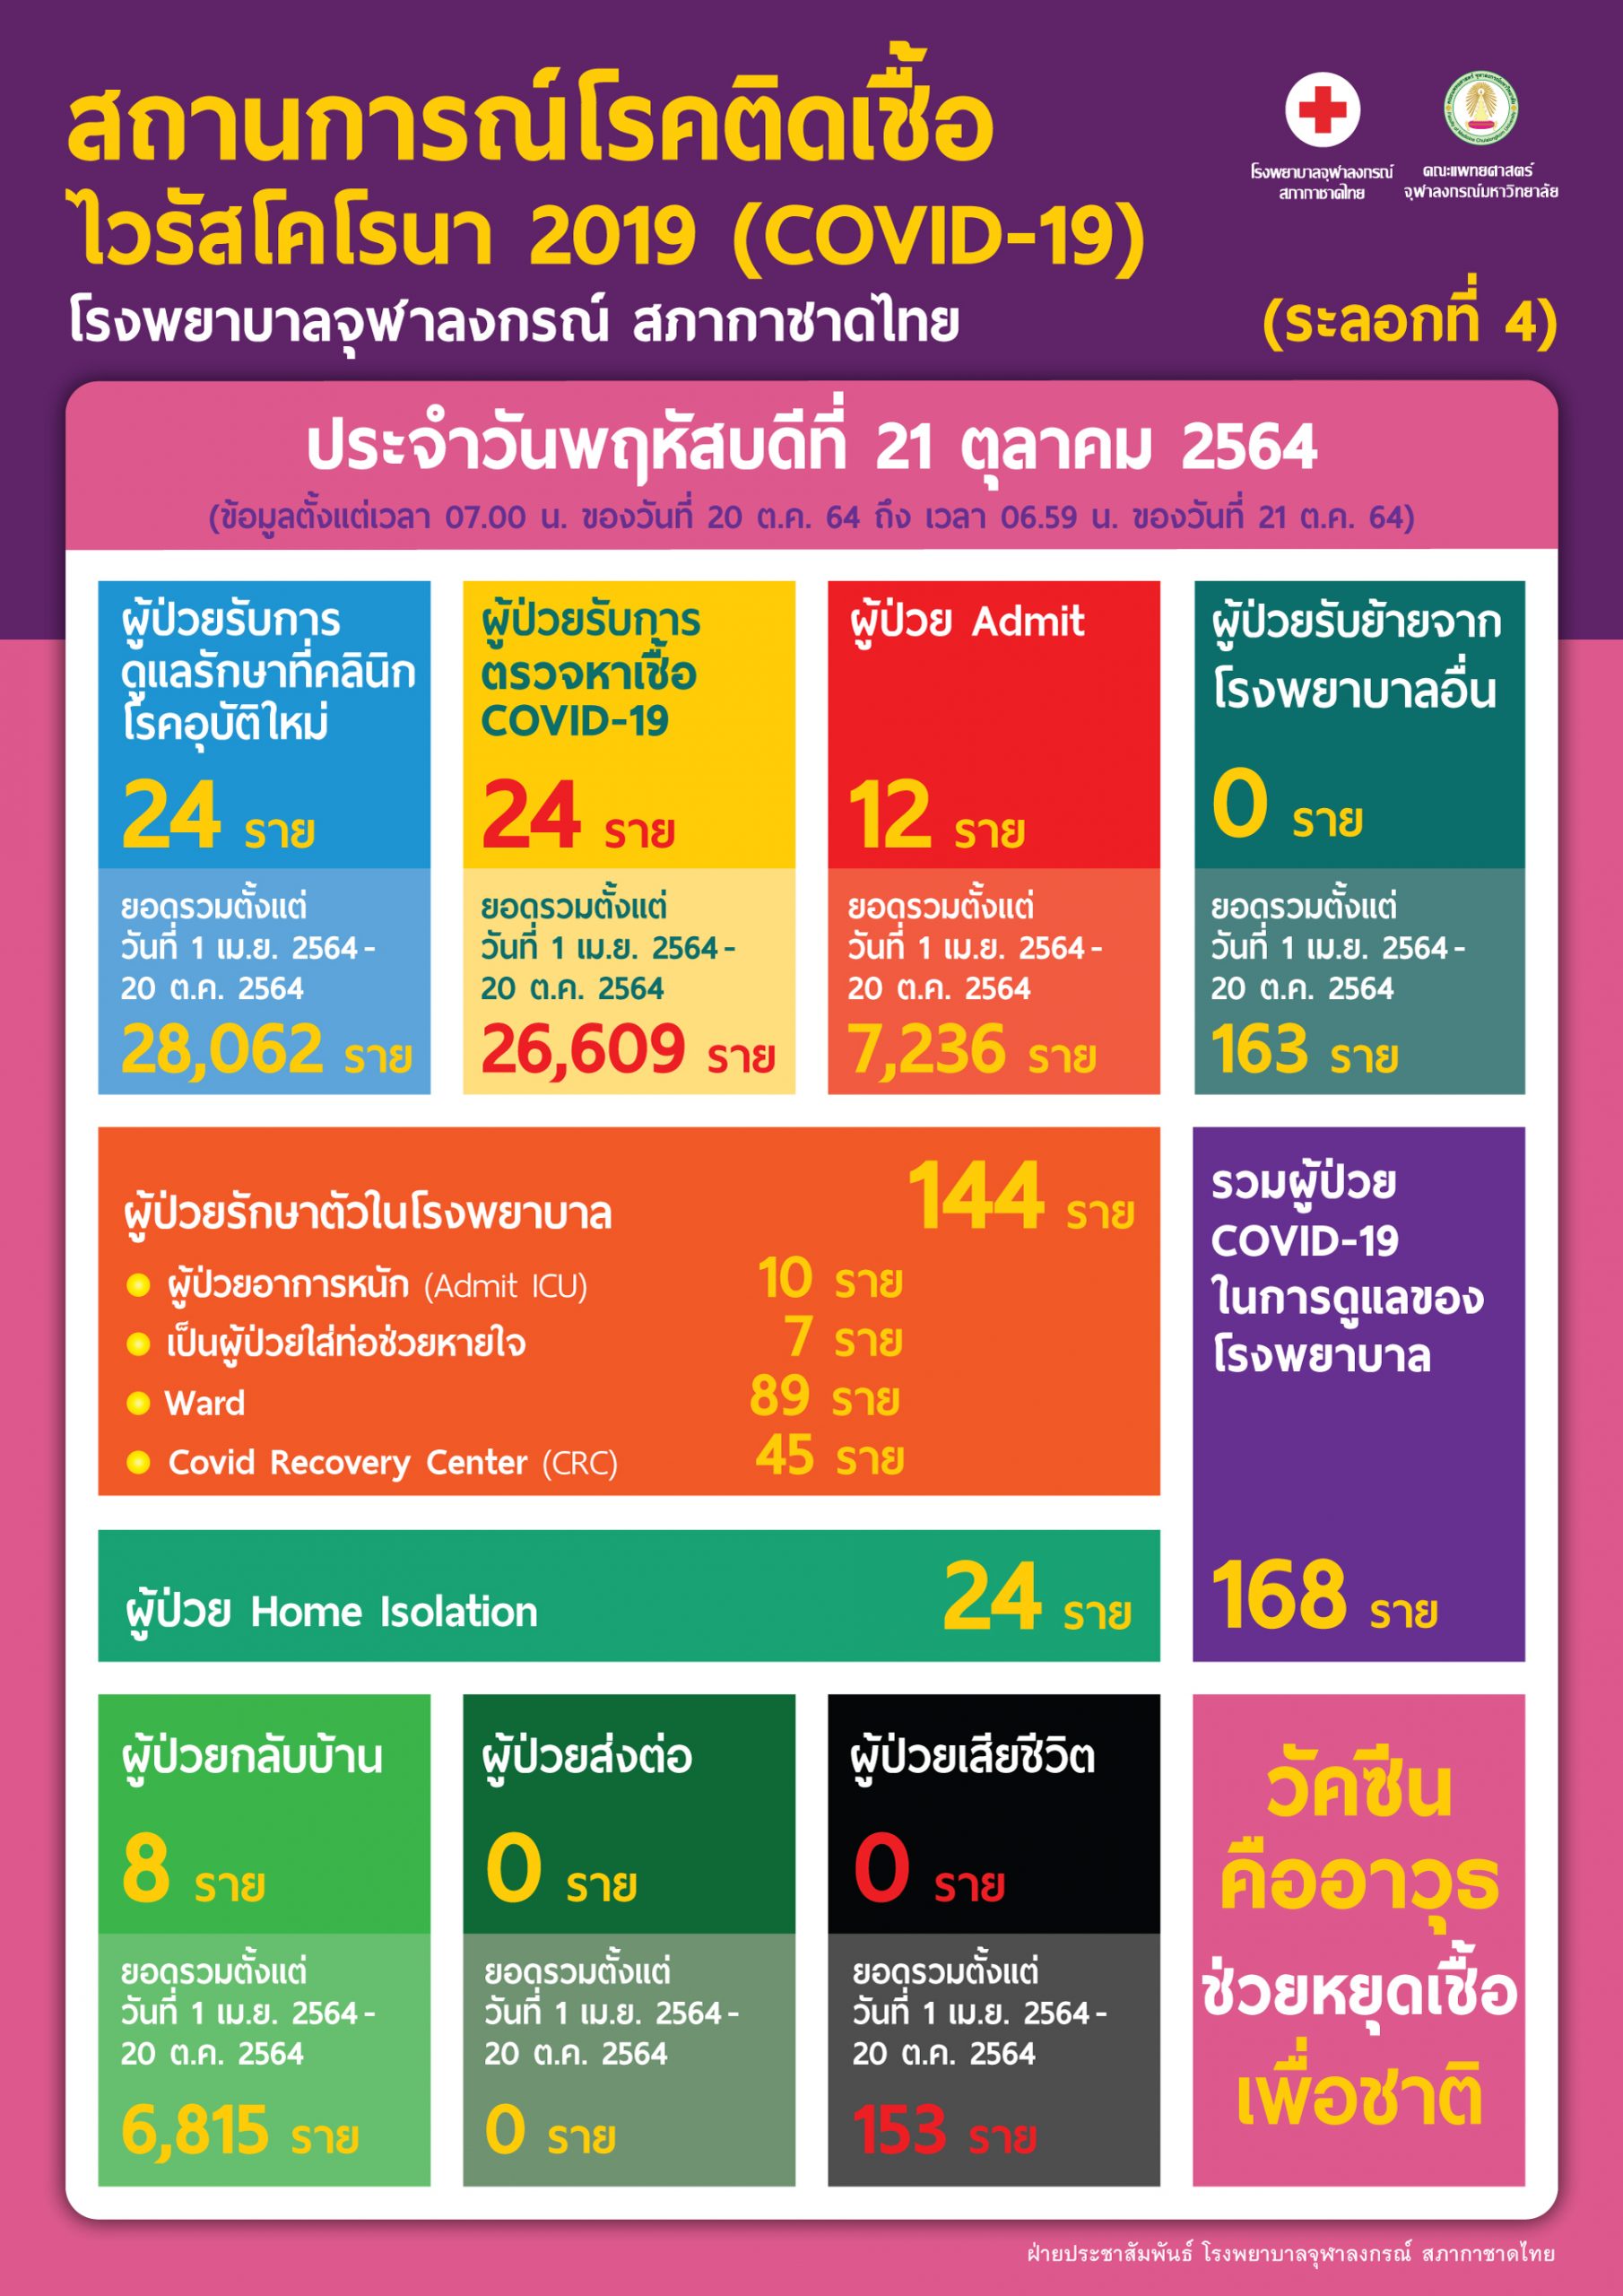 สถานการณ์โรคติดเชื้อไวรัสโคโรนา 2019 (COVID-19) (ระลอกที่ 4) โรงพยาบาลจุฬาลงกรณ์ สภากาชาดไทย  ประจำวันพฤหัสบดีที่ 21 ตุลาคม 2564